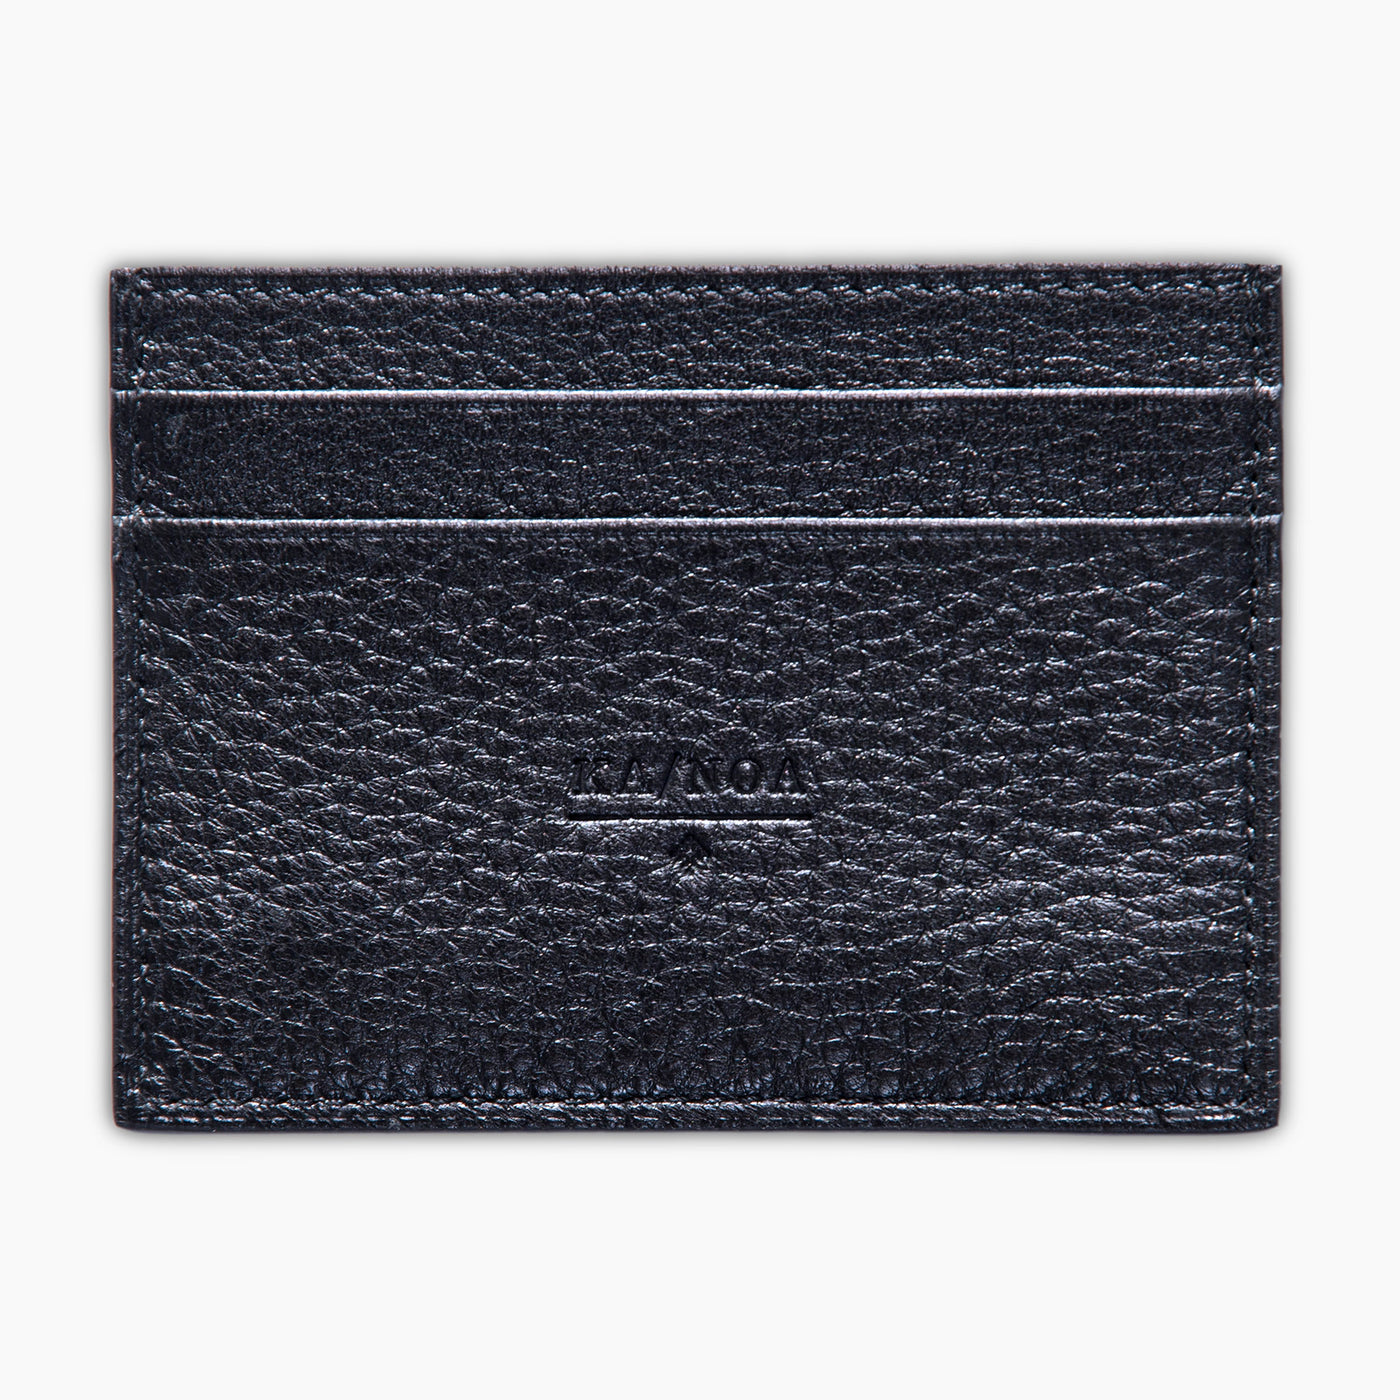 Cesar 100% deerskin leather credit card holder (dark blue)